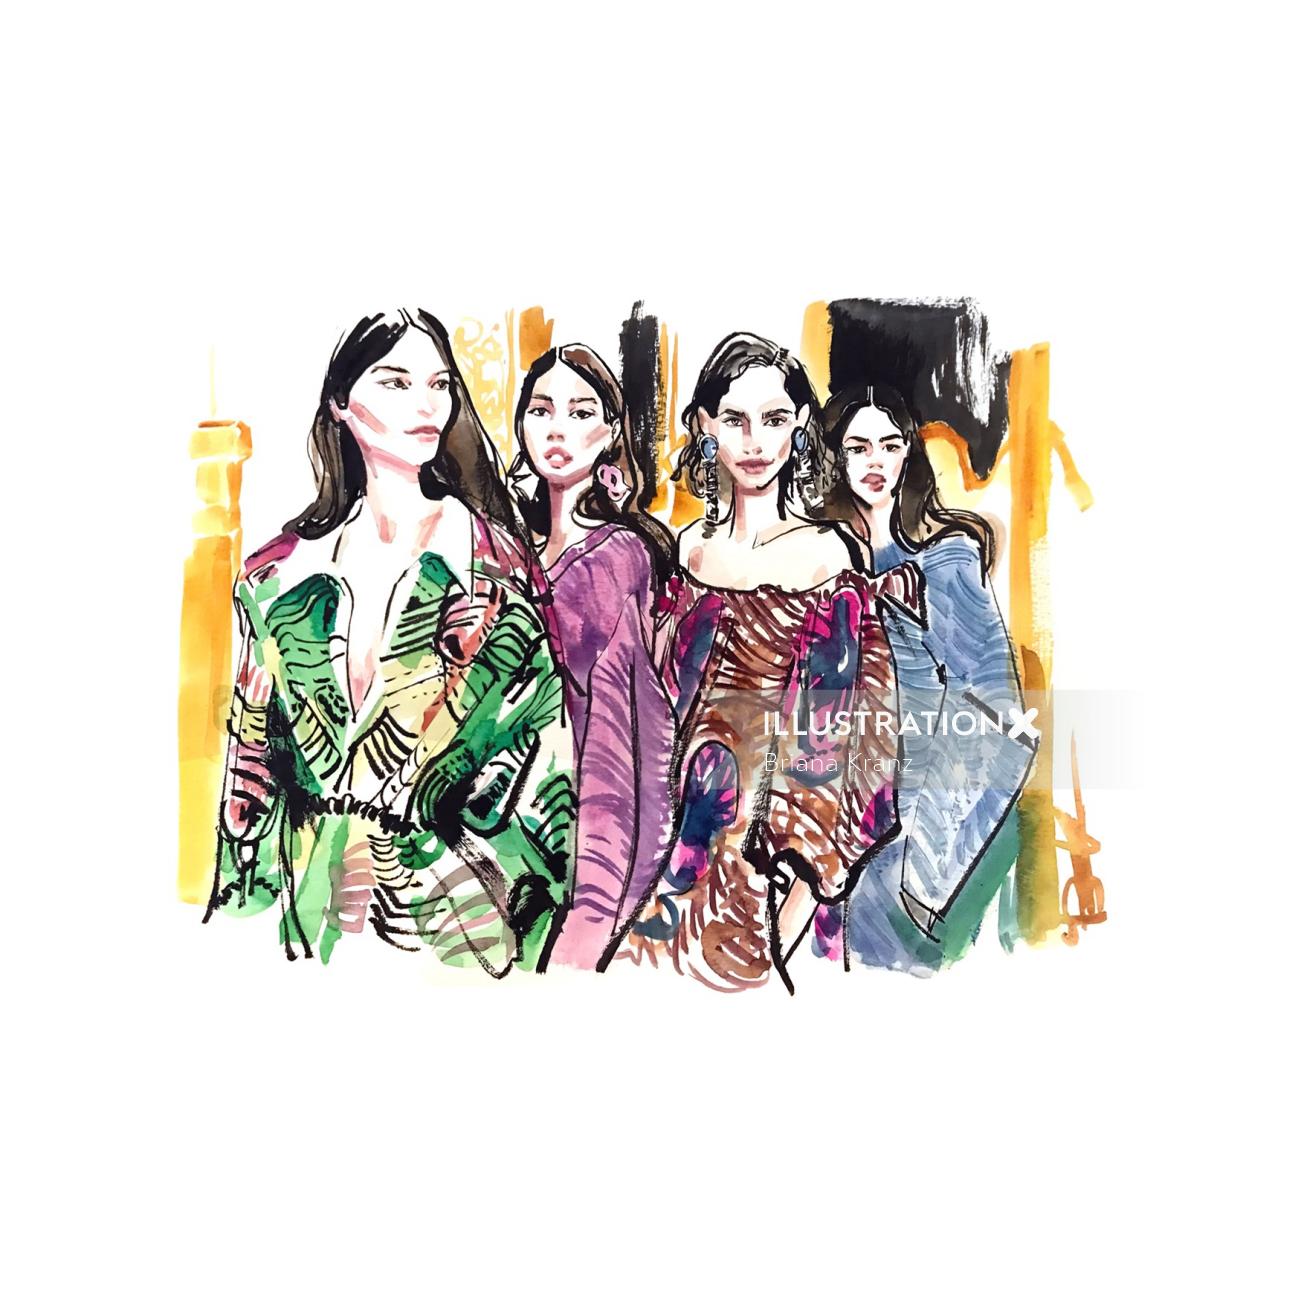 Watercolour sketch of fashion women